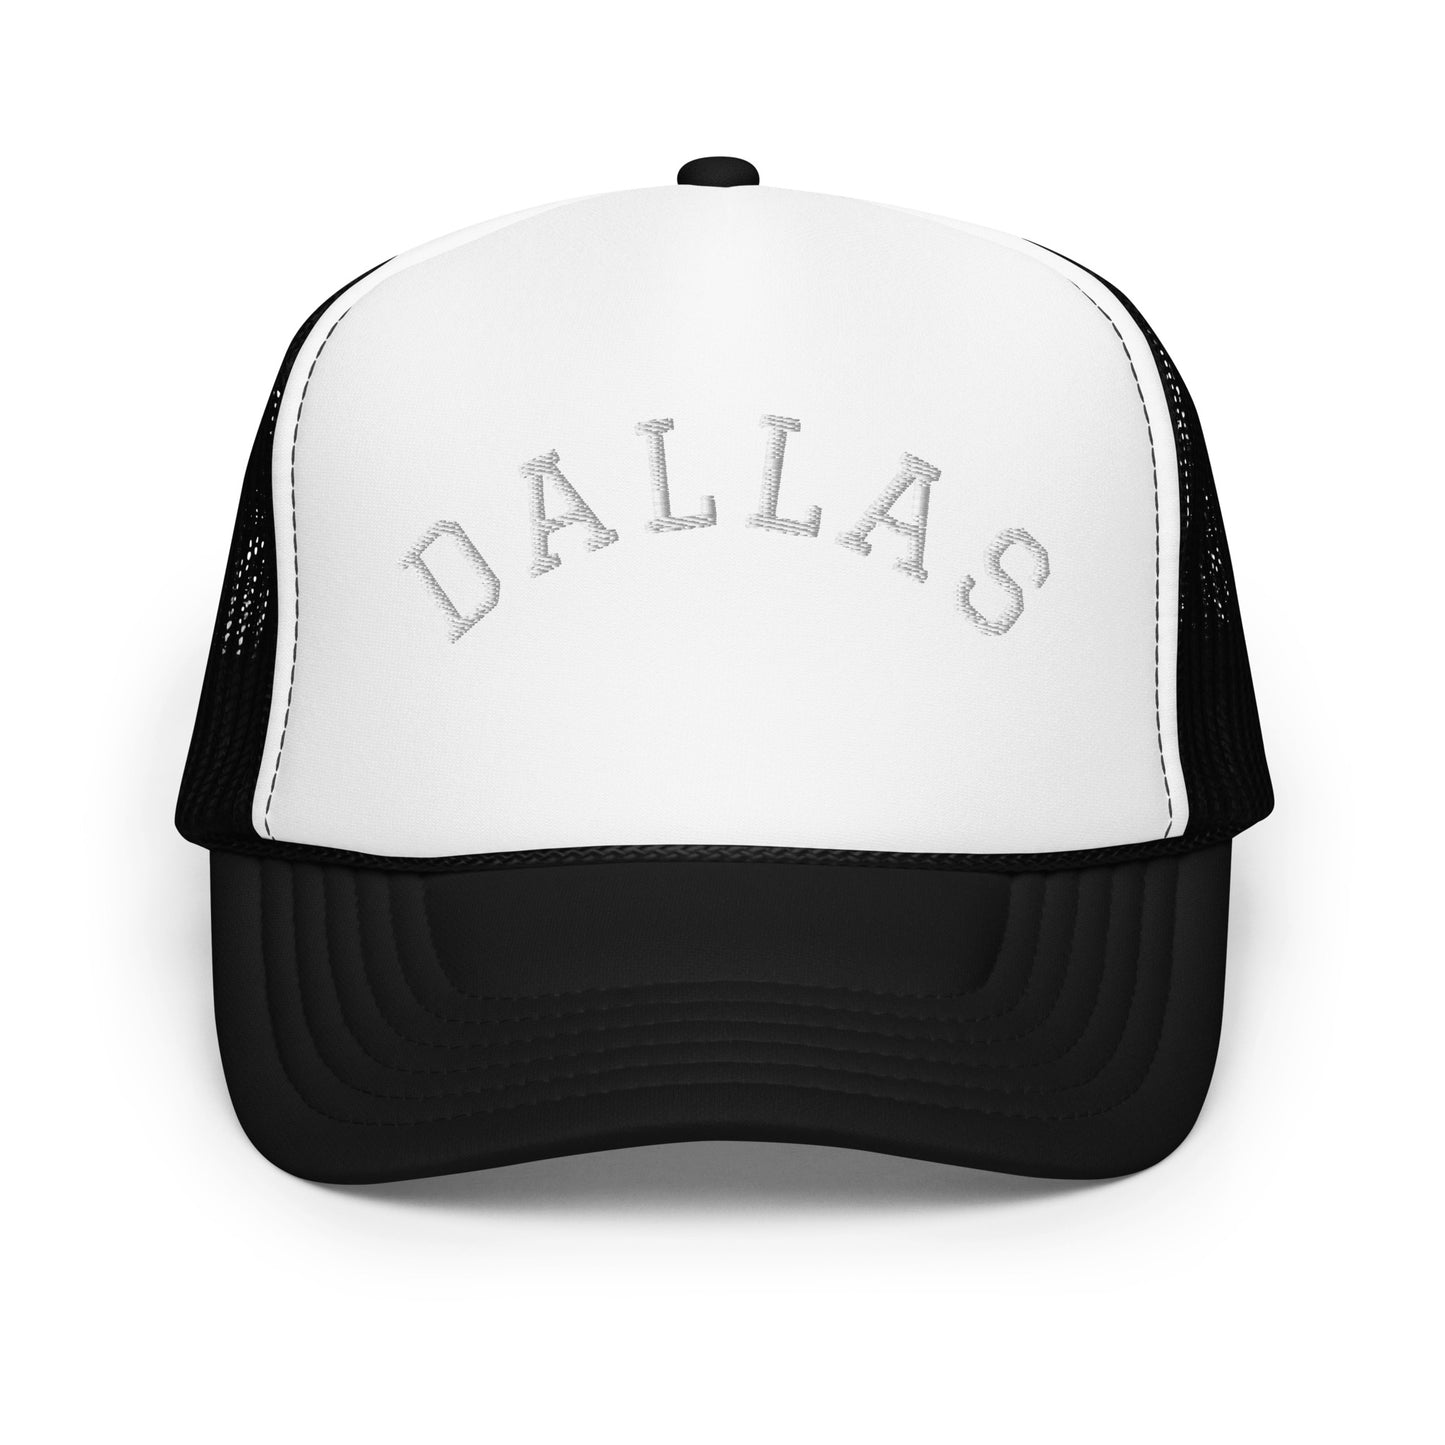 Dallas Arch Foam 5 Panel A-Frame Snapback Trucker Hat